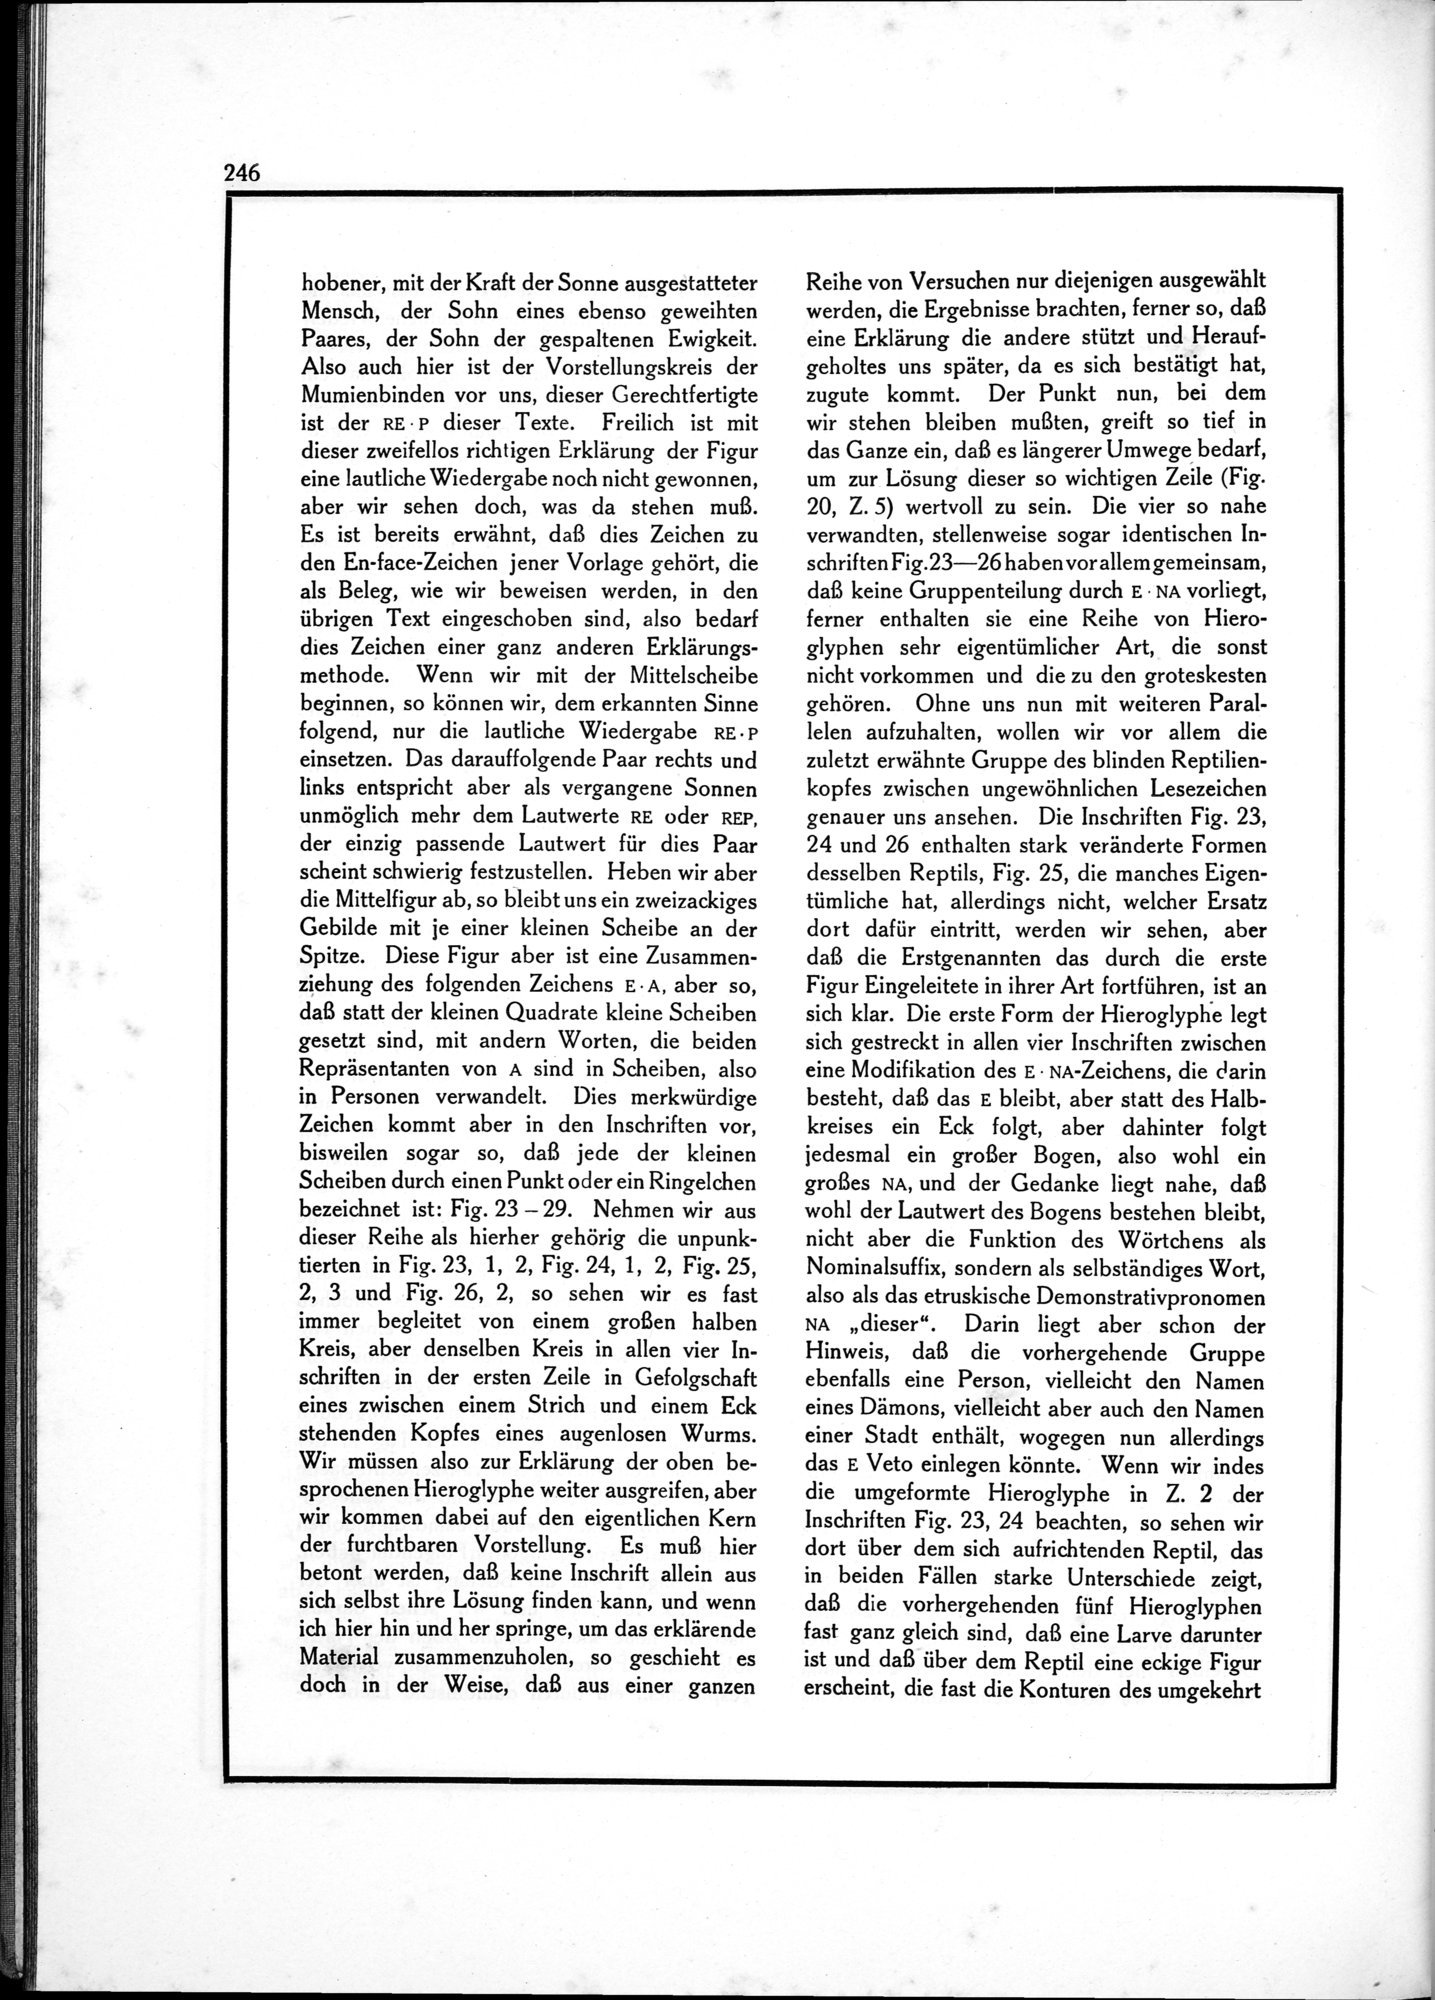 Die Teufel des Avesta und Ihre Beziehungen zur Ikonographie des Buddhismus Zentral-Asiens : vol.1 / Page 250 (Grayscale High Resolution Image)